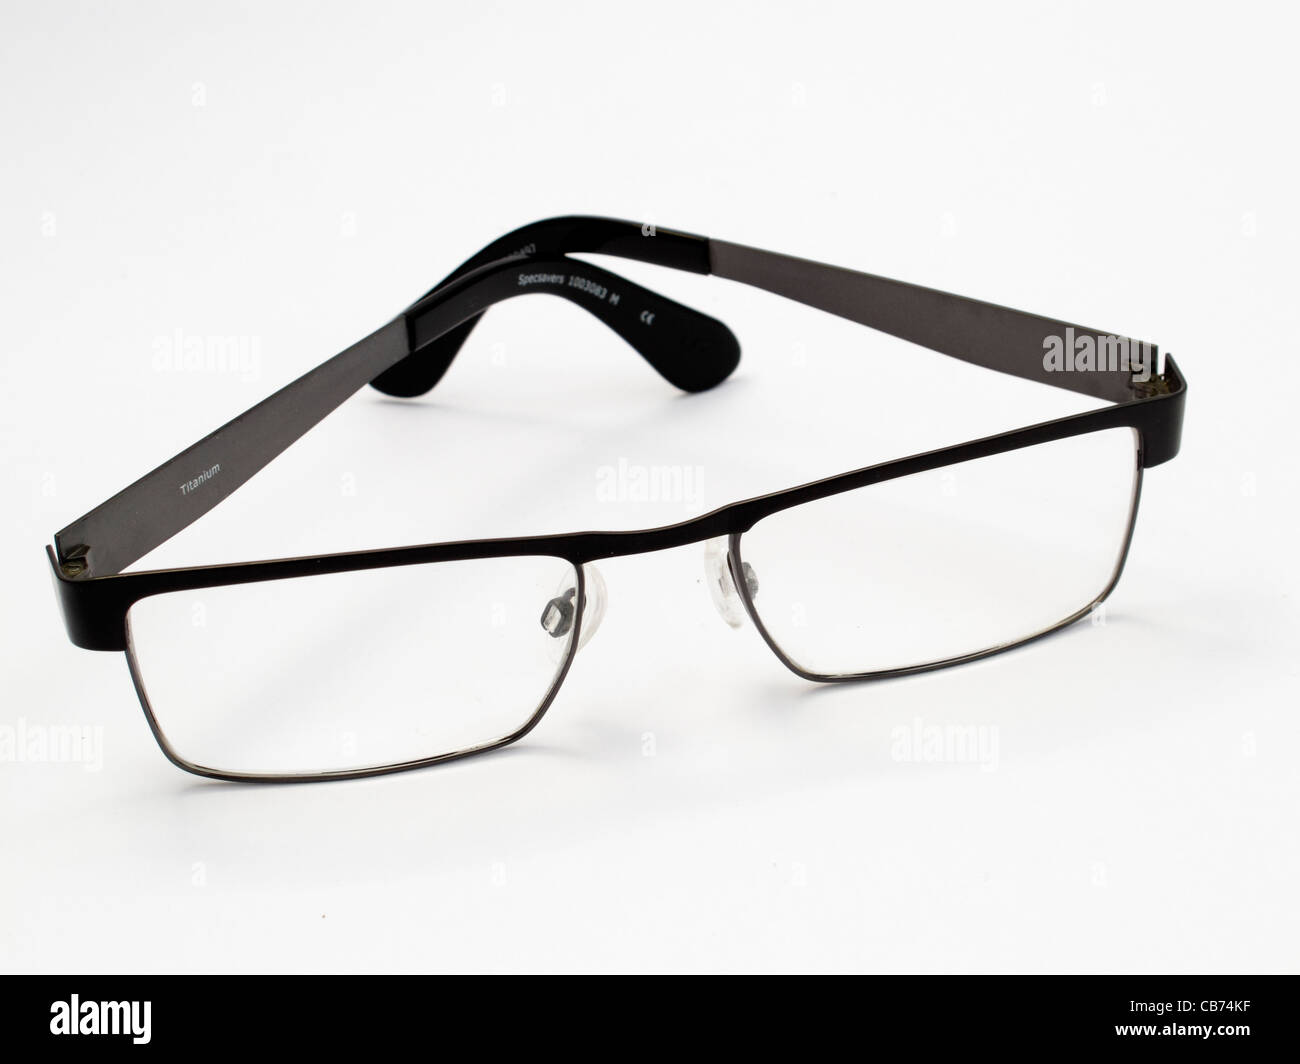 Gafas con montura negra para hombre fotografías imágenes alta resolución Alamy